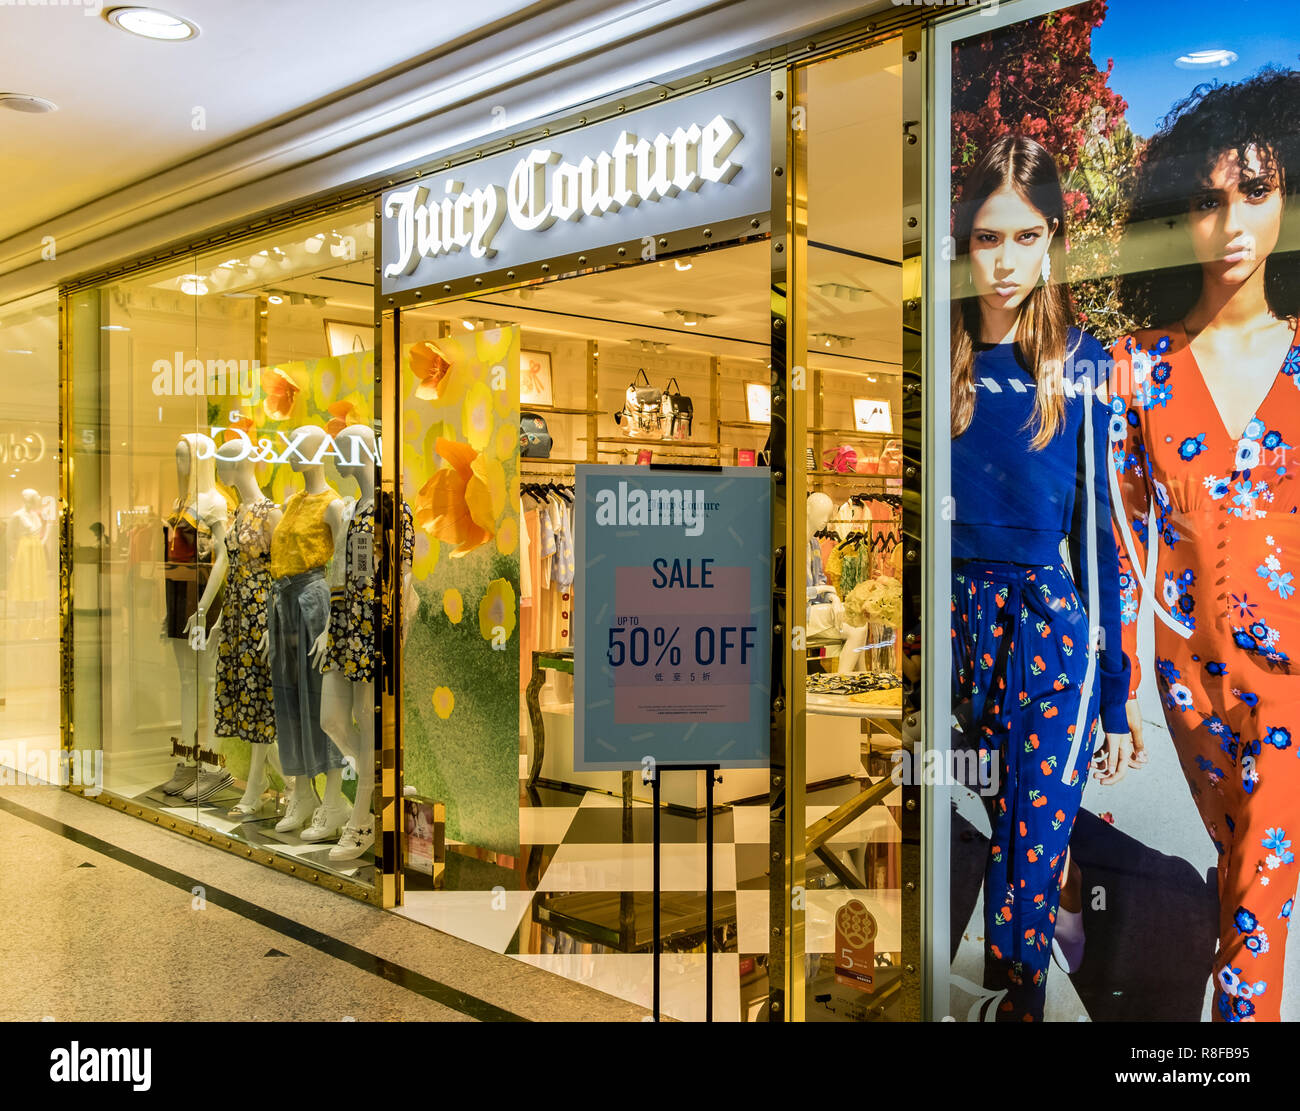 Hong Kong, April 7, 2019: Juicy Couture store in Hong Kong Stock Photo ...